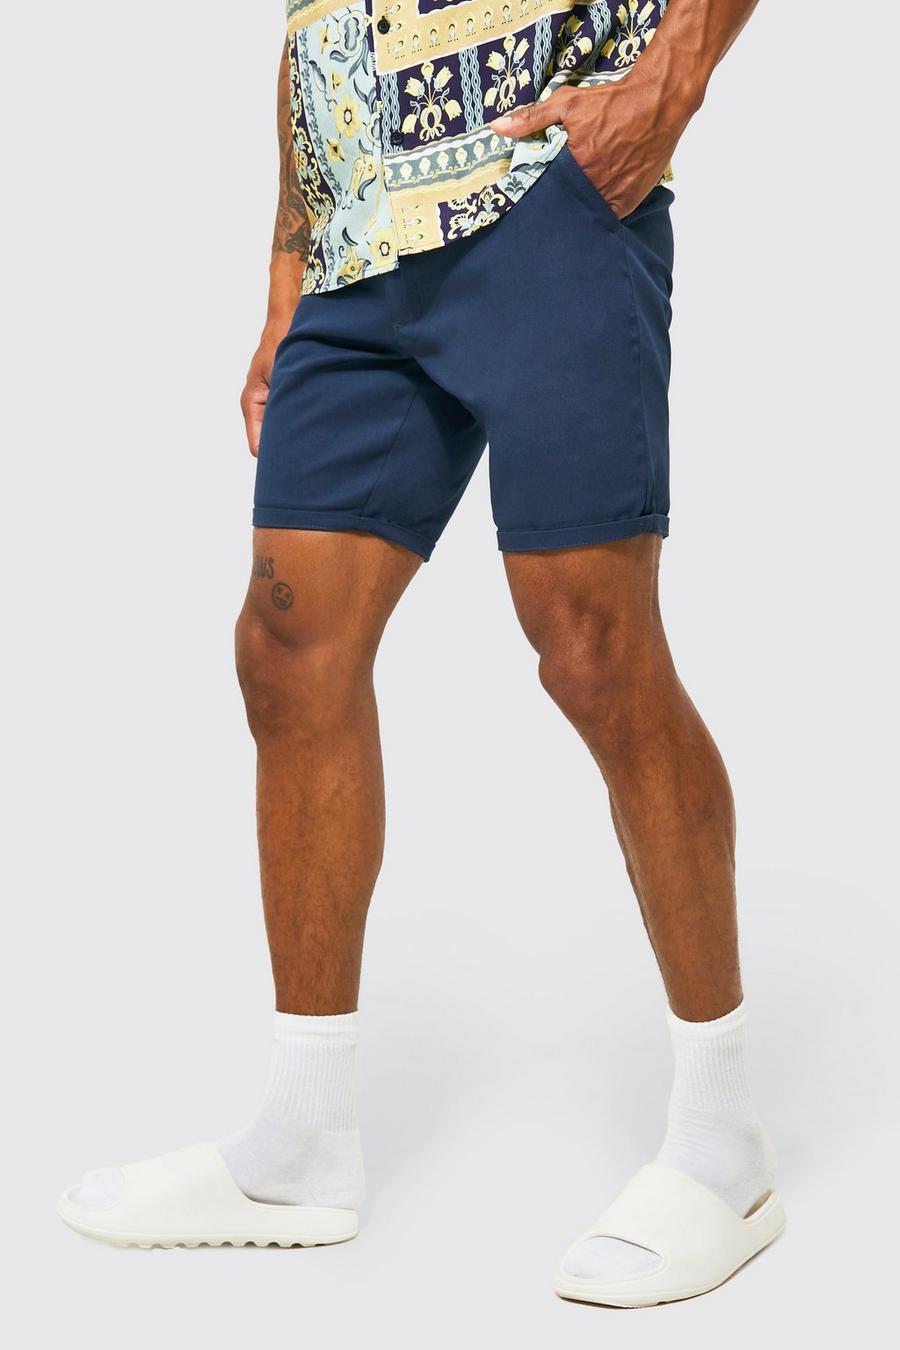 Pantalón corto chino ajustado, Navy azul marino